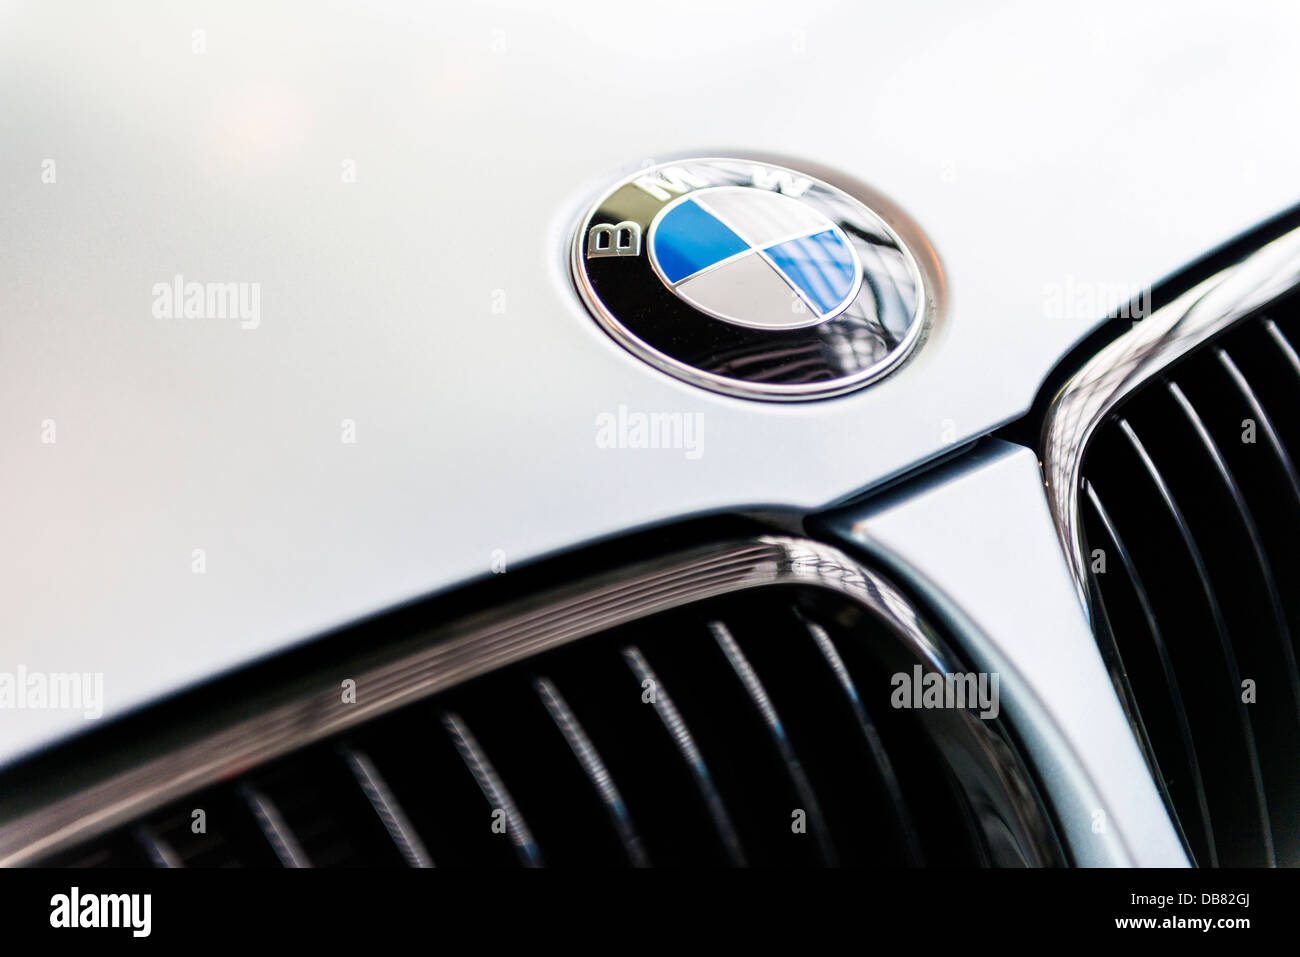 Neue Bmw-Motorhaube mit BMW Emblem Stockfotografie - Alamy